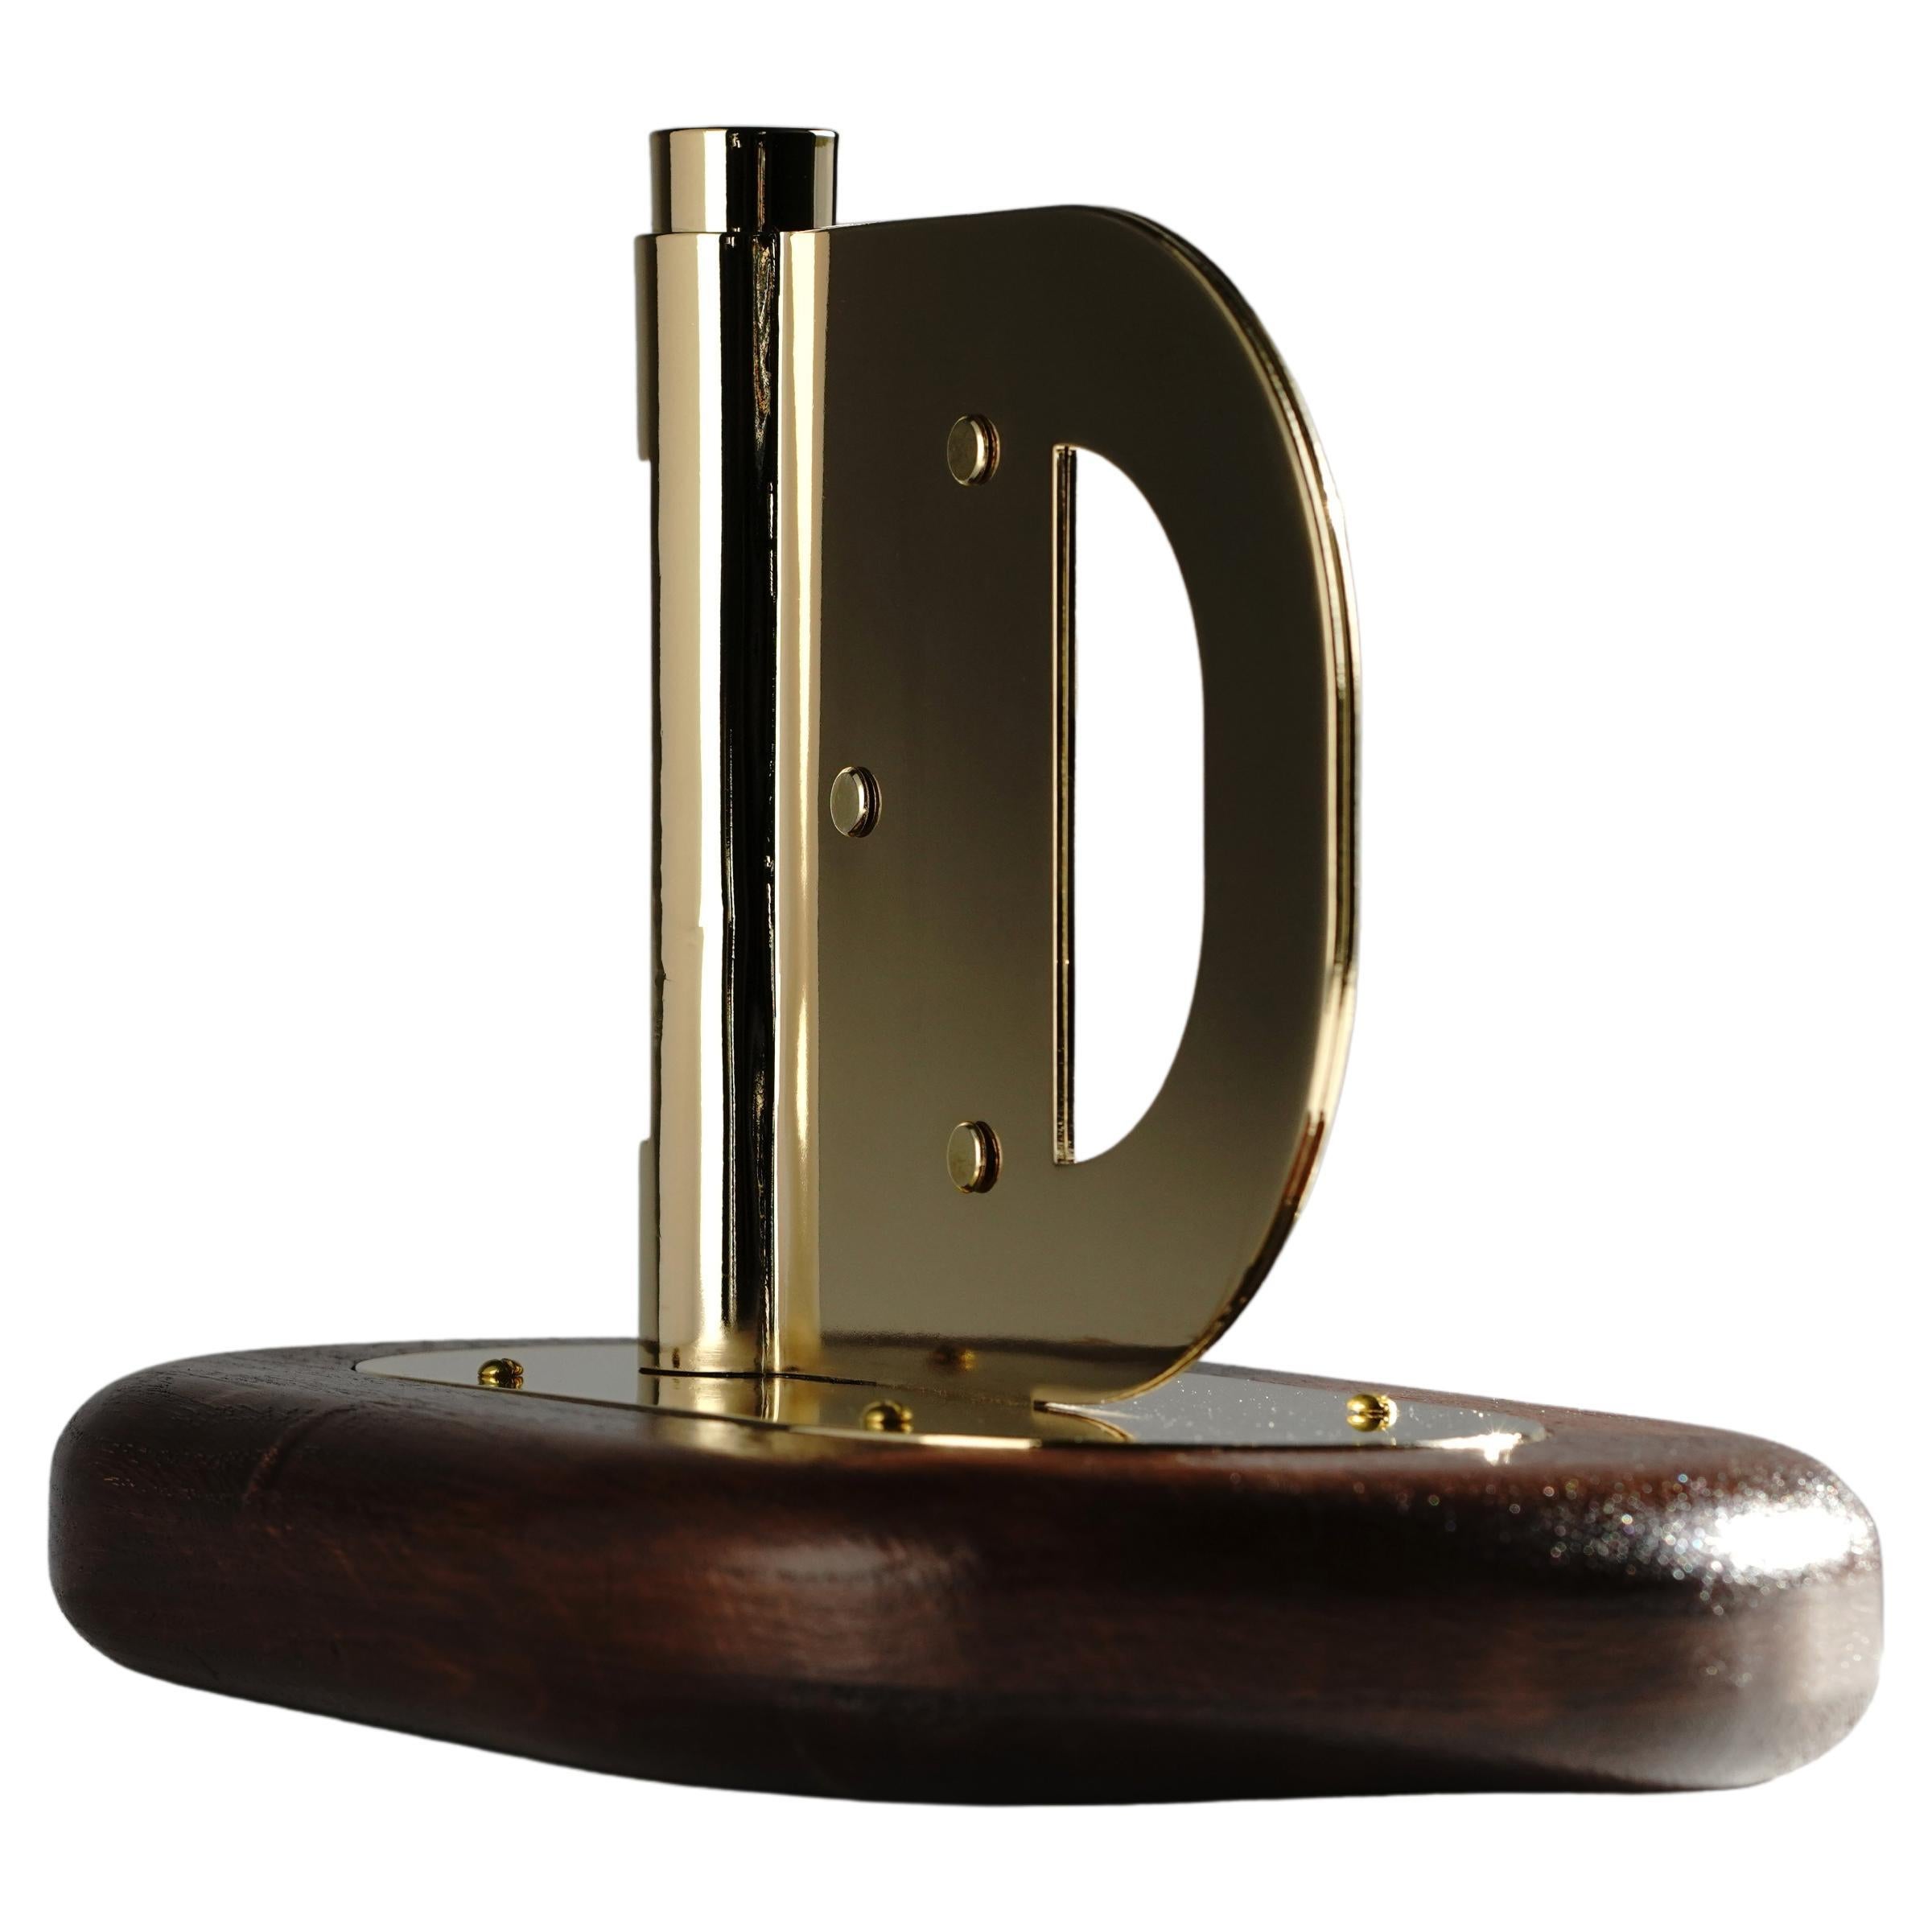 Contemporary Dutch Design Harm De Veer Candleholder brass wood oak handmade